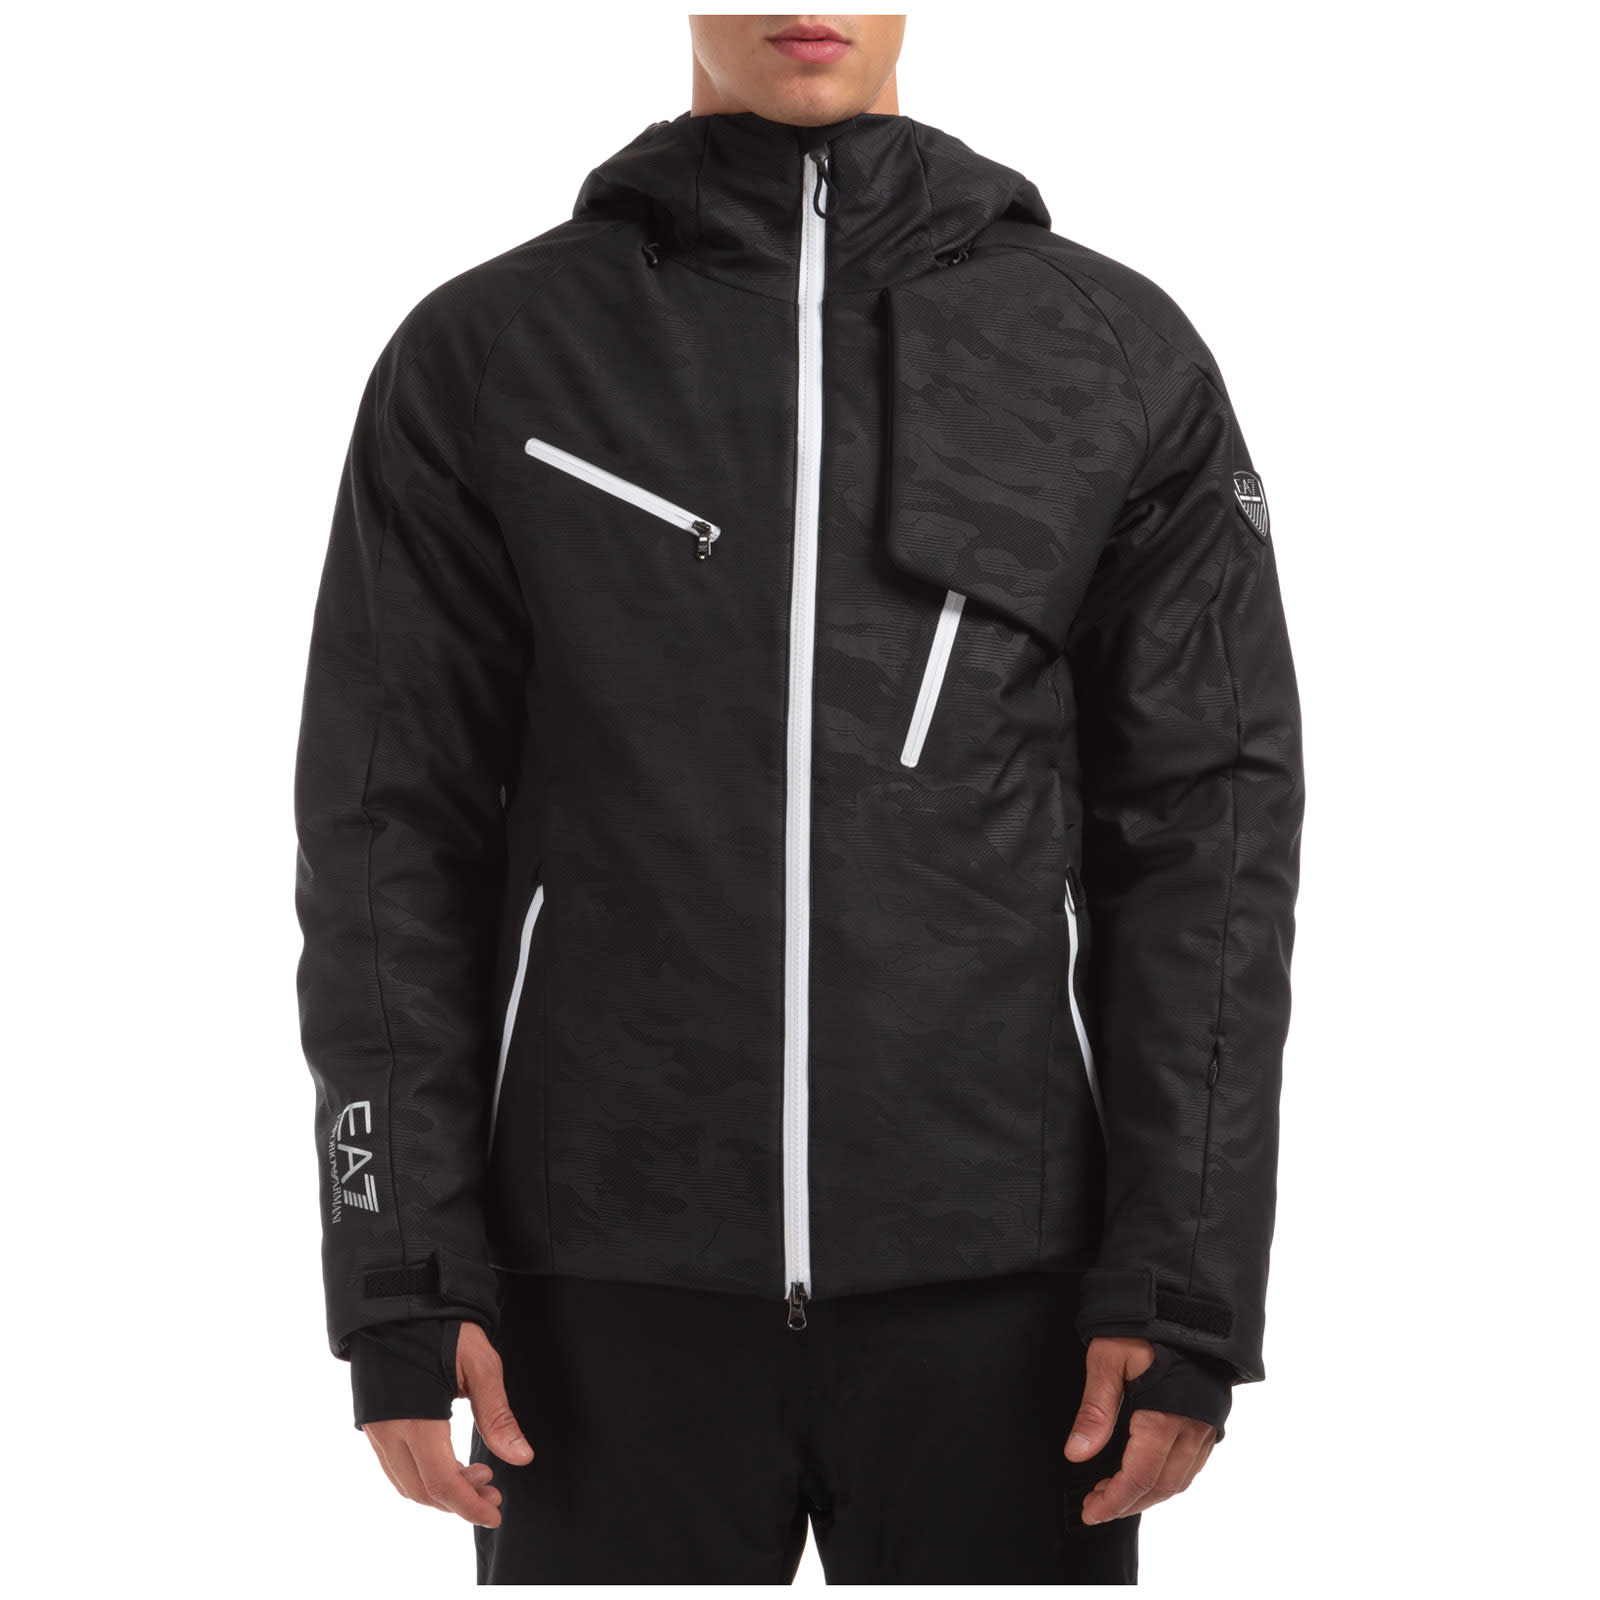 Ea7 Emporio Armani Textum 7 Ski Jackets In Black Camouflage | ModeSens